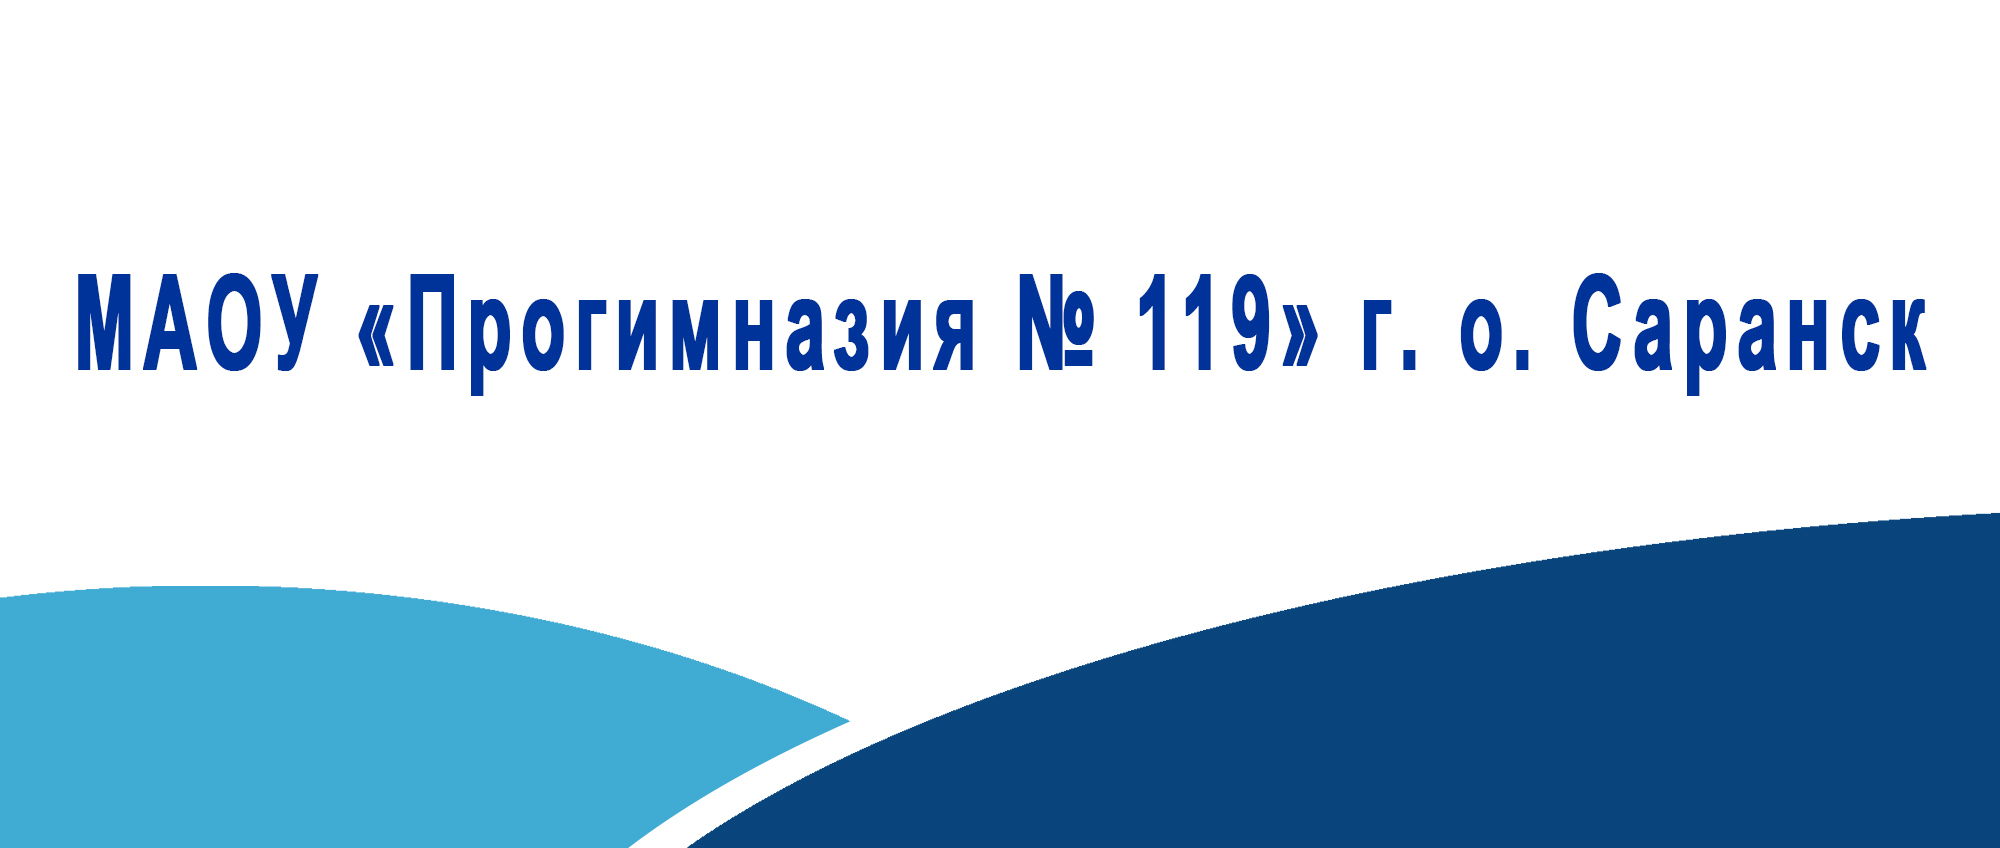 МАОУ Прогимназия 119 г. о. Саранск